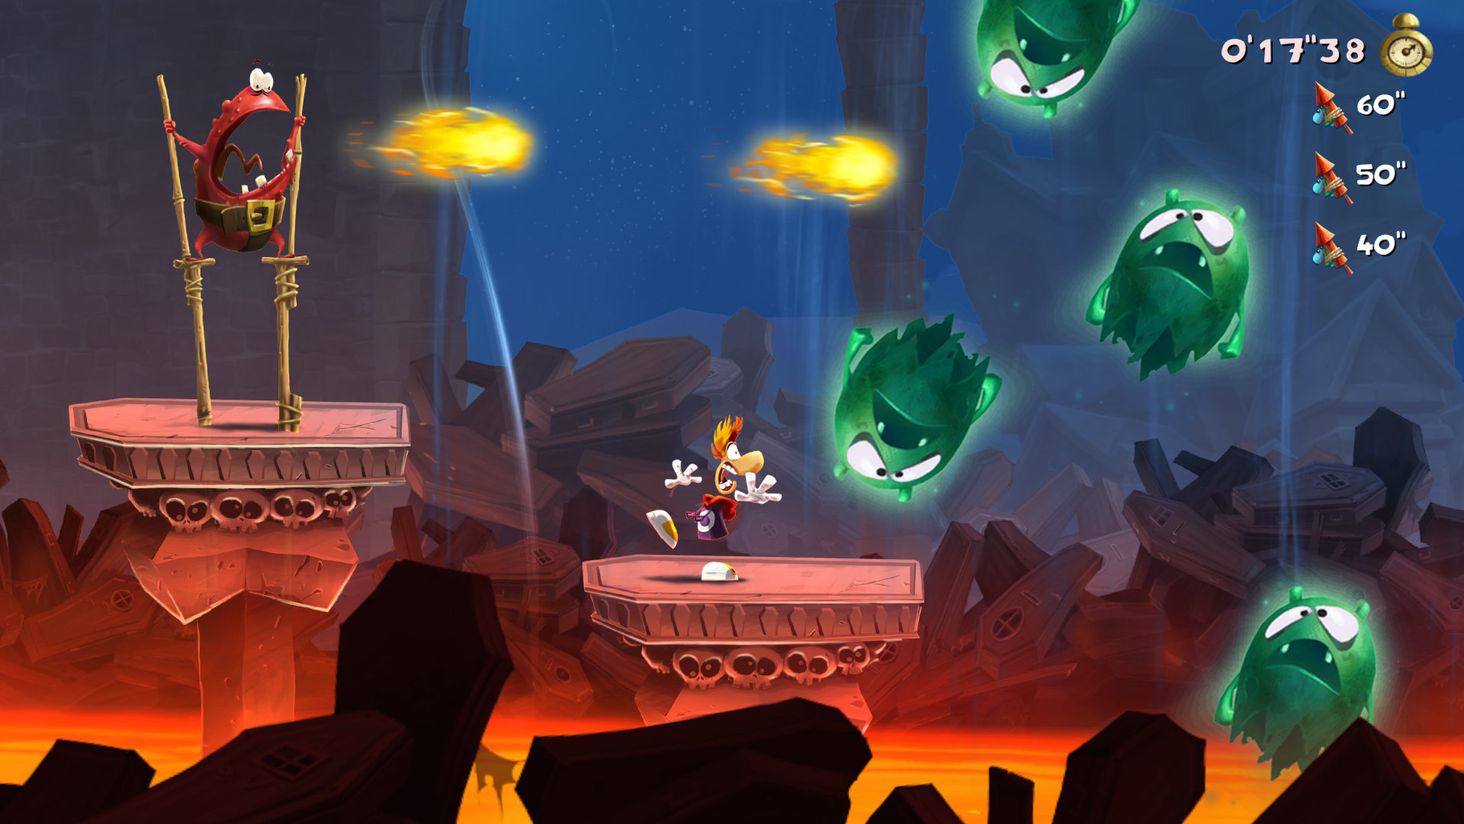 Jogo Rayman Legends Ubisoft Nintendo Switch em Promoção é no Bondfaro